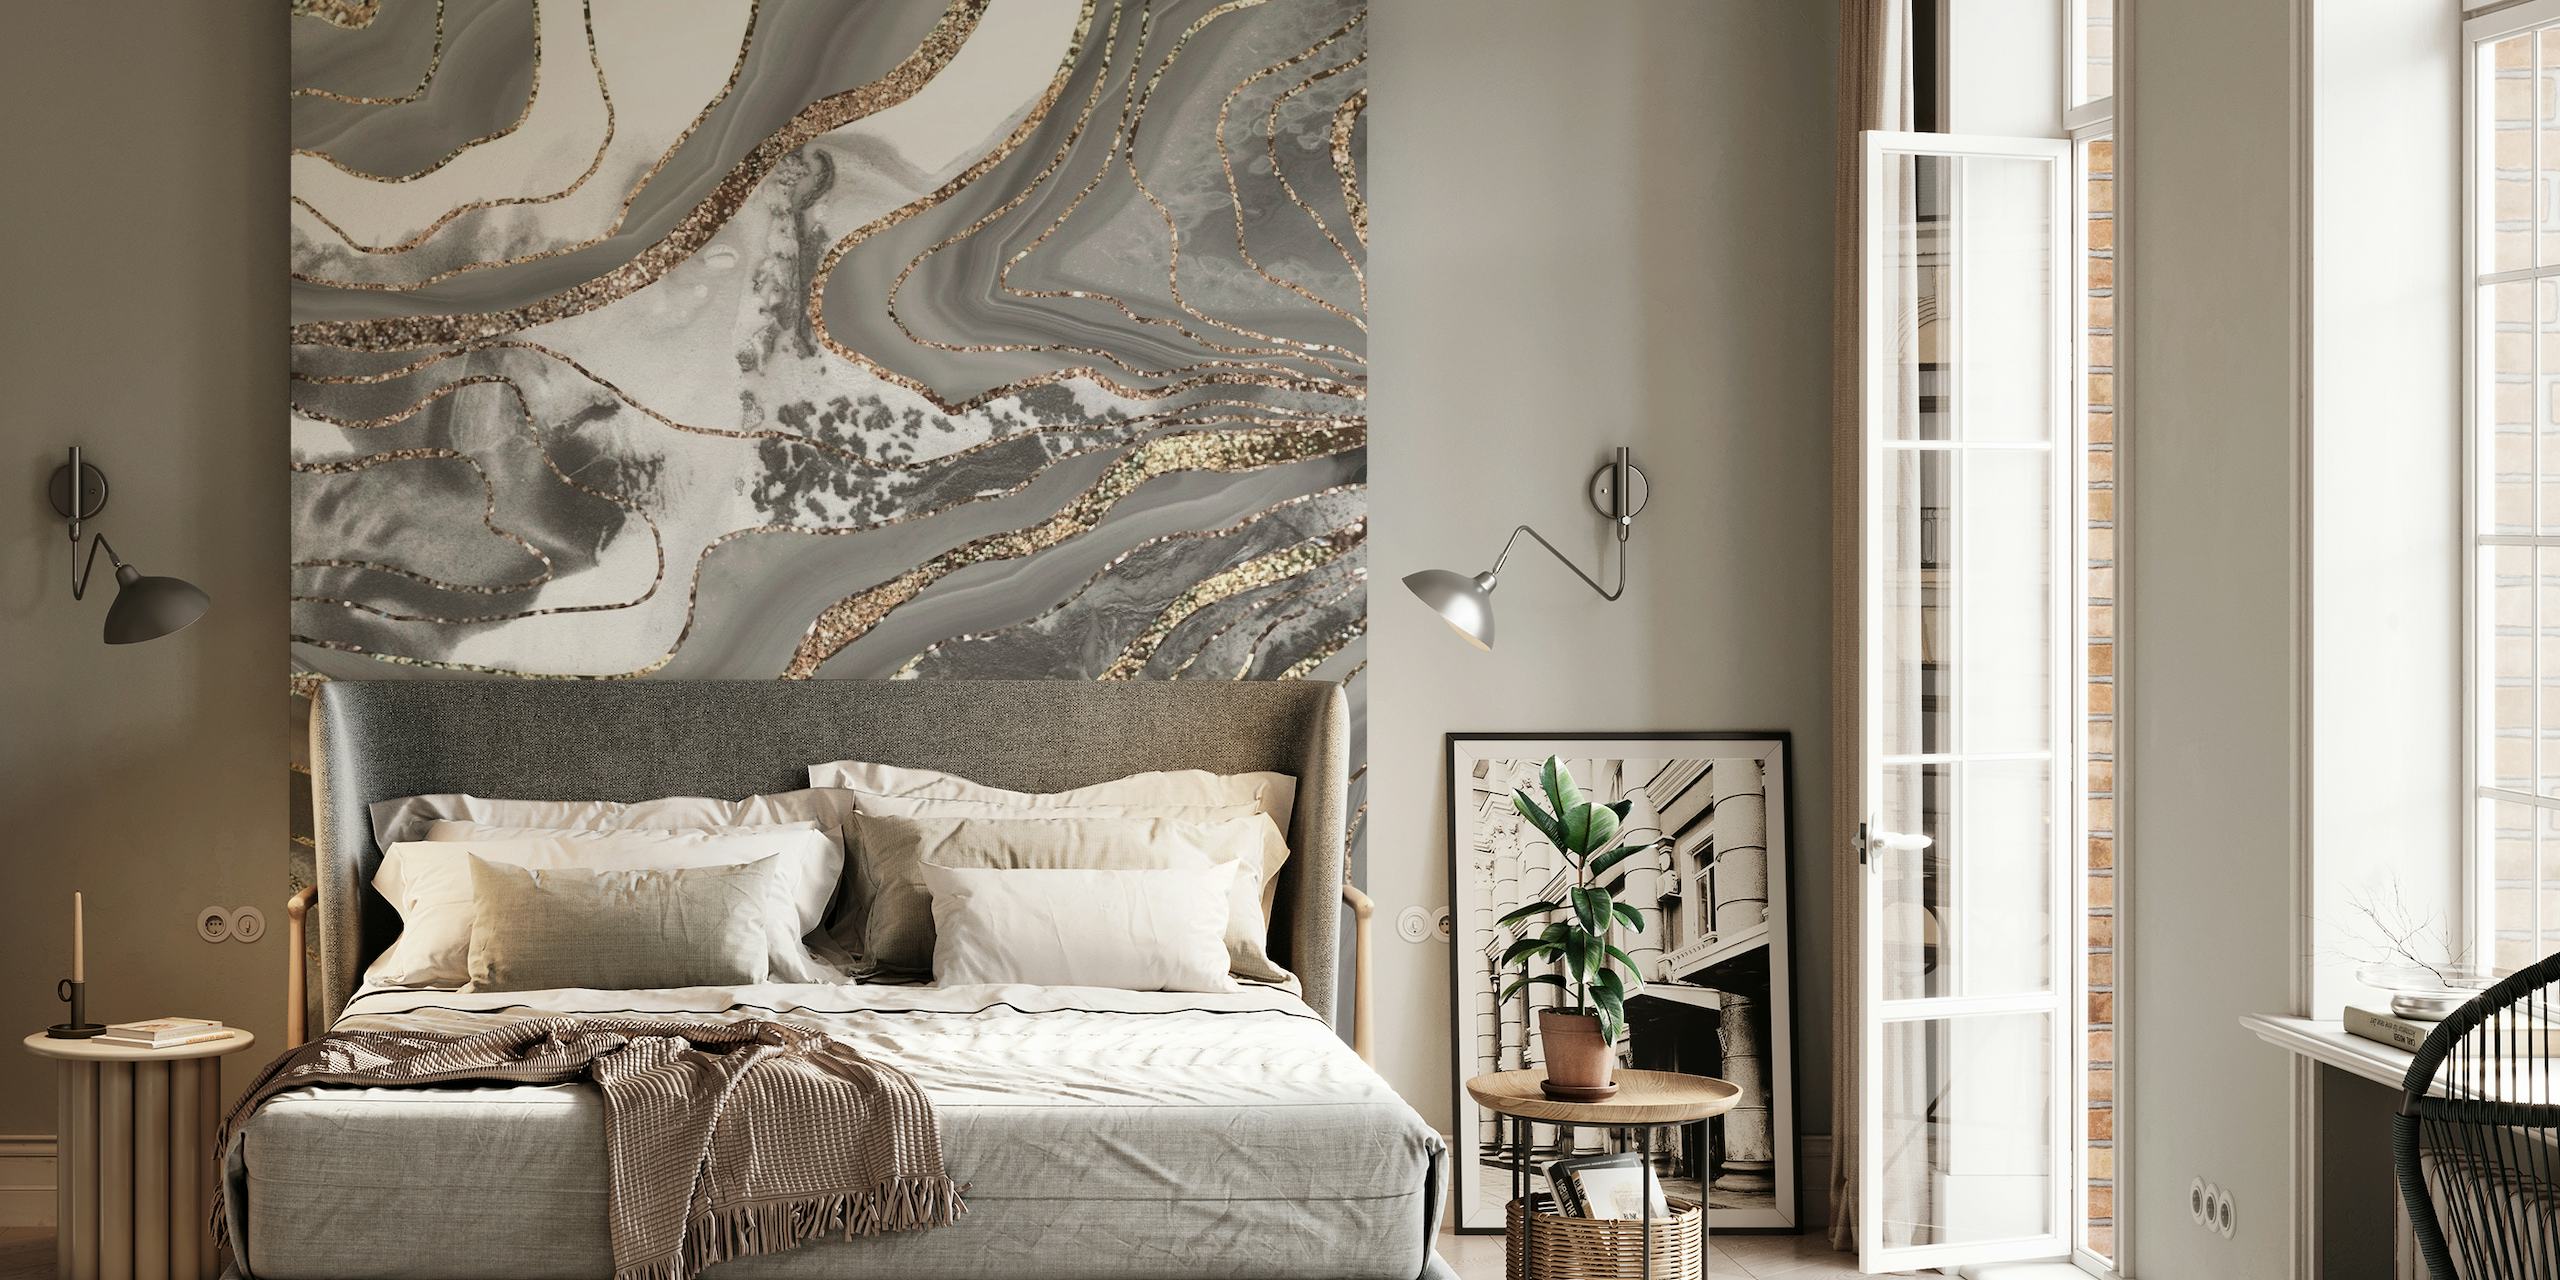 Elegante vloeibare marmeren agaat muurschildering met grijze, witte en gouden patronen